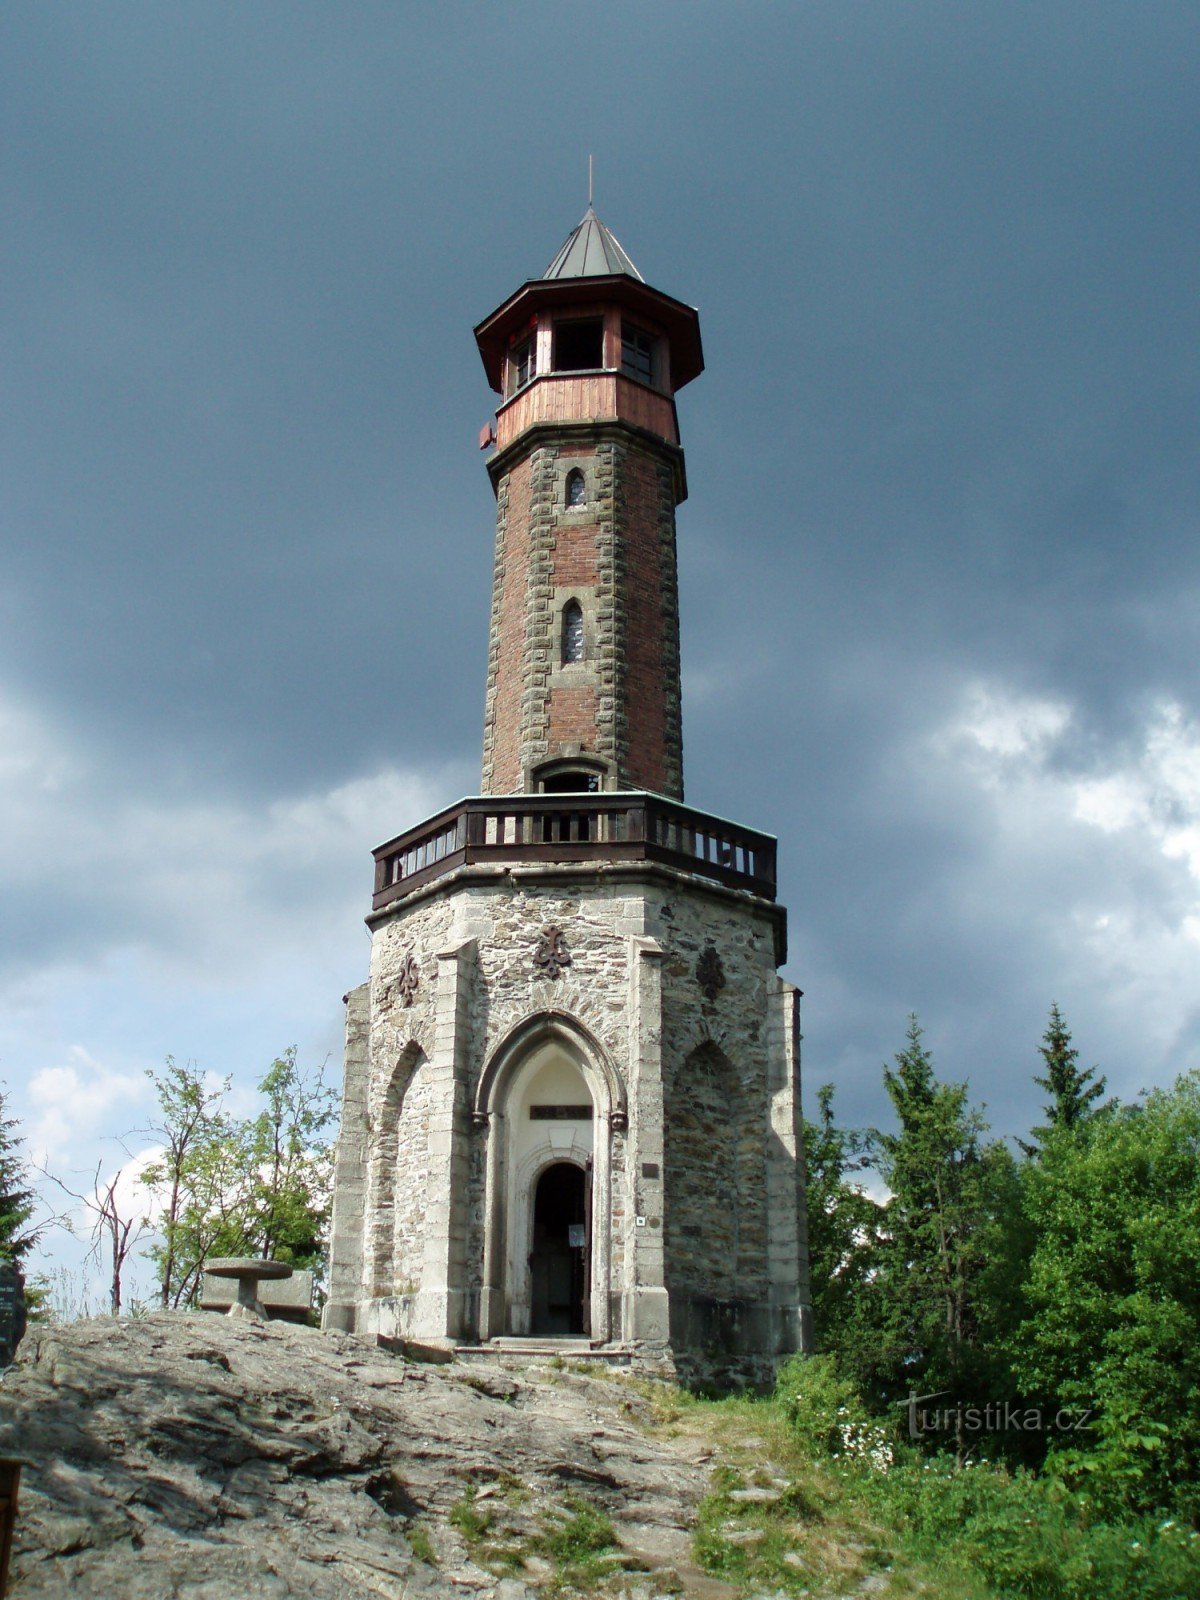 Tháp quan sát Štěpánka